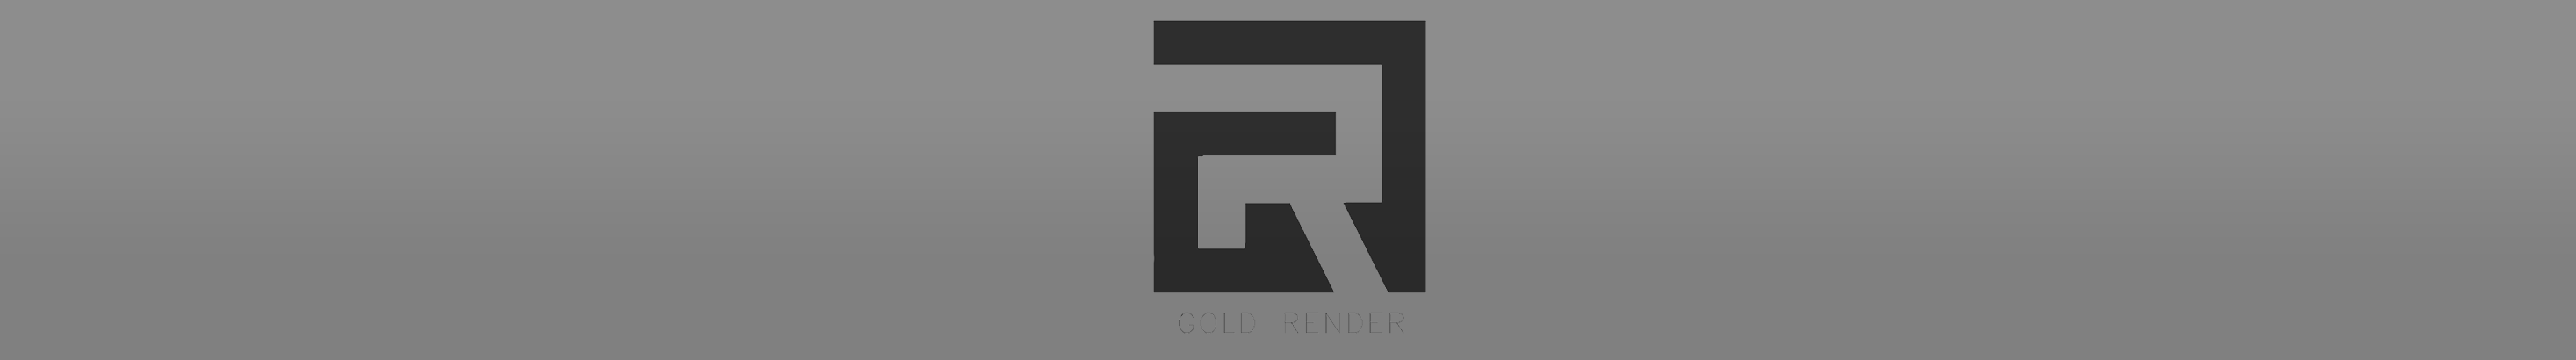 GOLD RENDER's profile banner